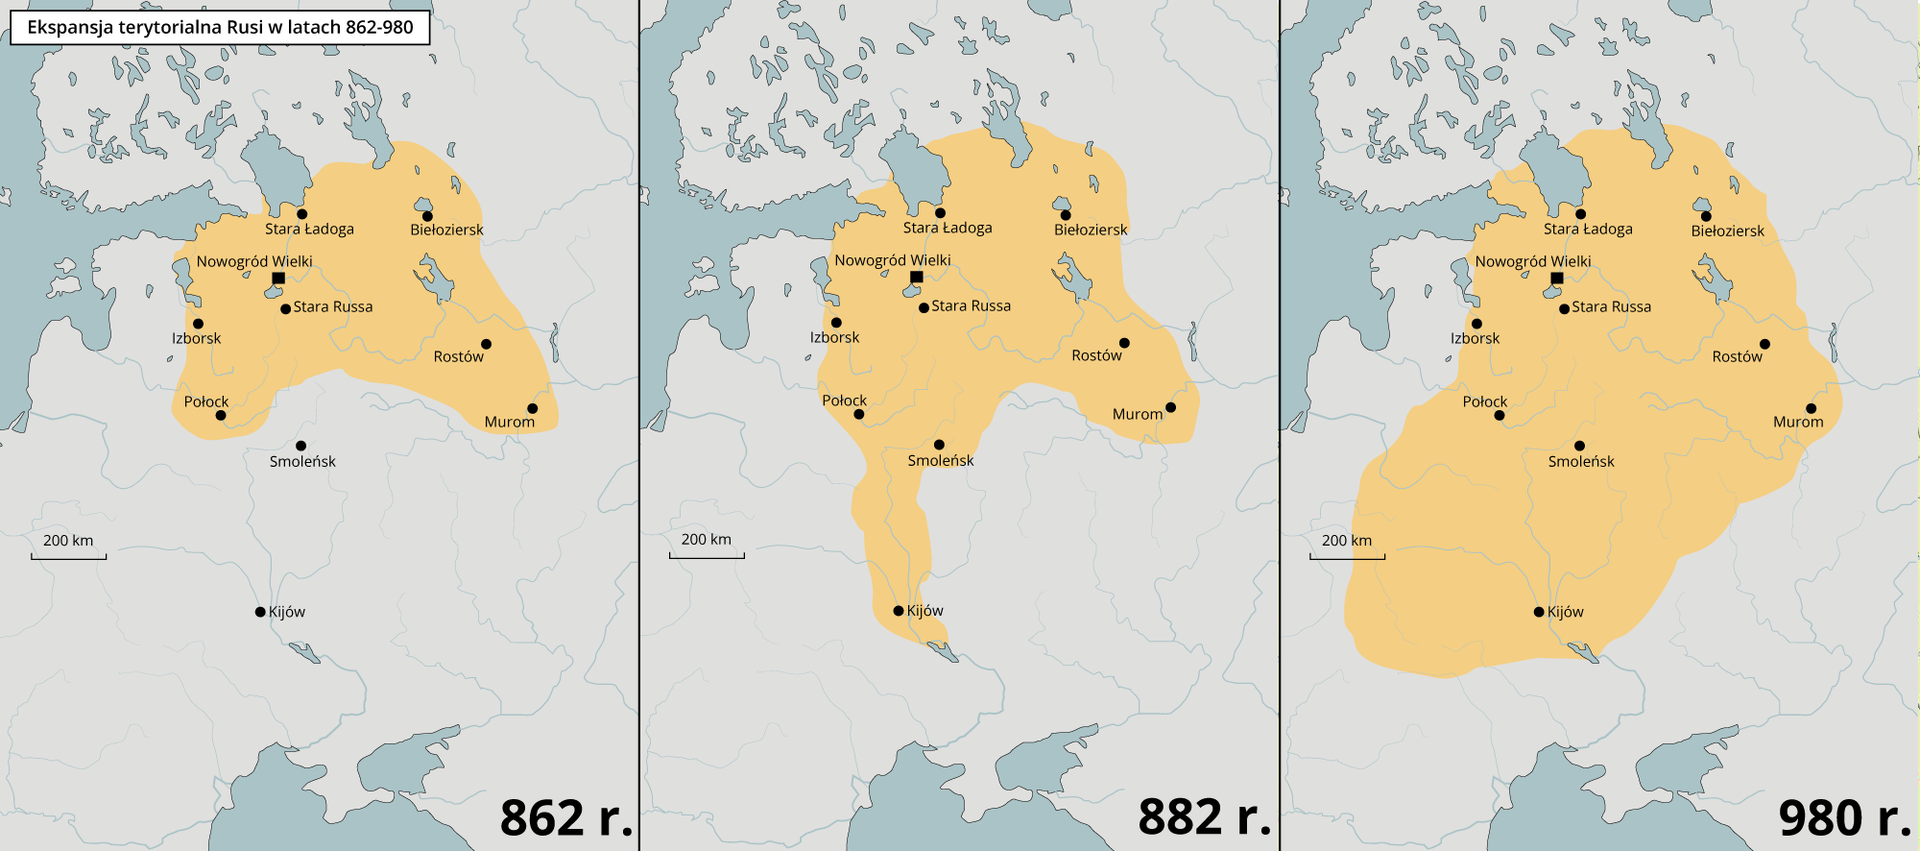 Trzy mapy przedstawiają ekspansję terytorialną Rusi od 862 do 980 roku.  W 862 roku Ruś kontrolowała takie miasta jak Nowogród Wielki, Stara Ładoga, Biełoziersk, Izborsk, Połock, Rostów, Murom oraz Stara Russa.  W 882 roku kontrolowała już takie miasta jak Smoleńsk czy Kijów.  W 890 roku kontrolowała obszar dzisiejszej Białorusi, północnej Ukrainy i zachodniej Rosji. 